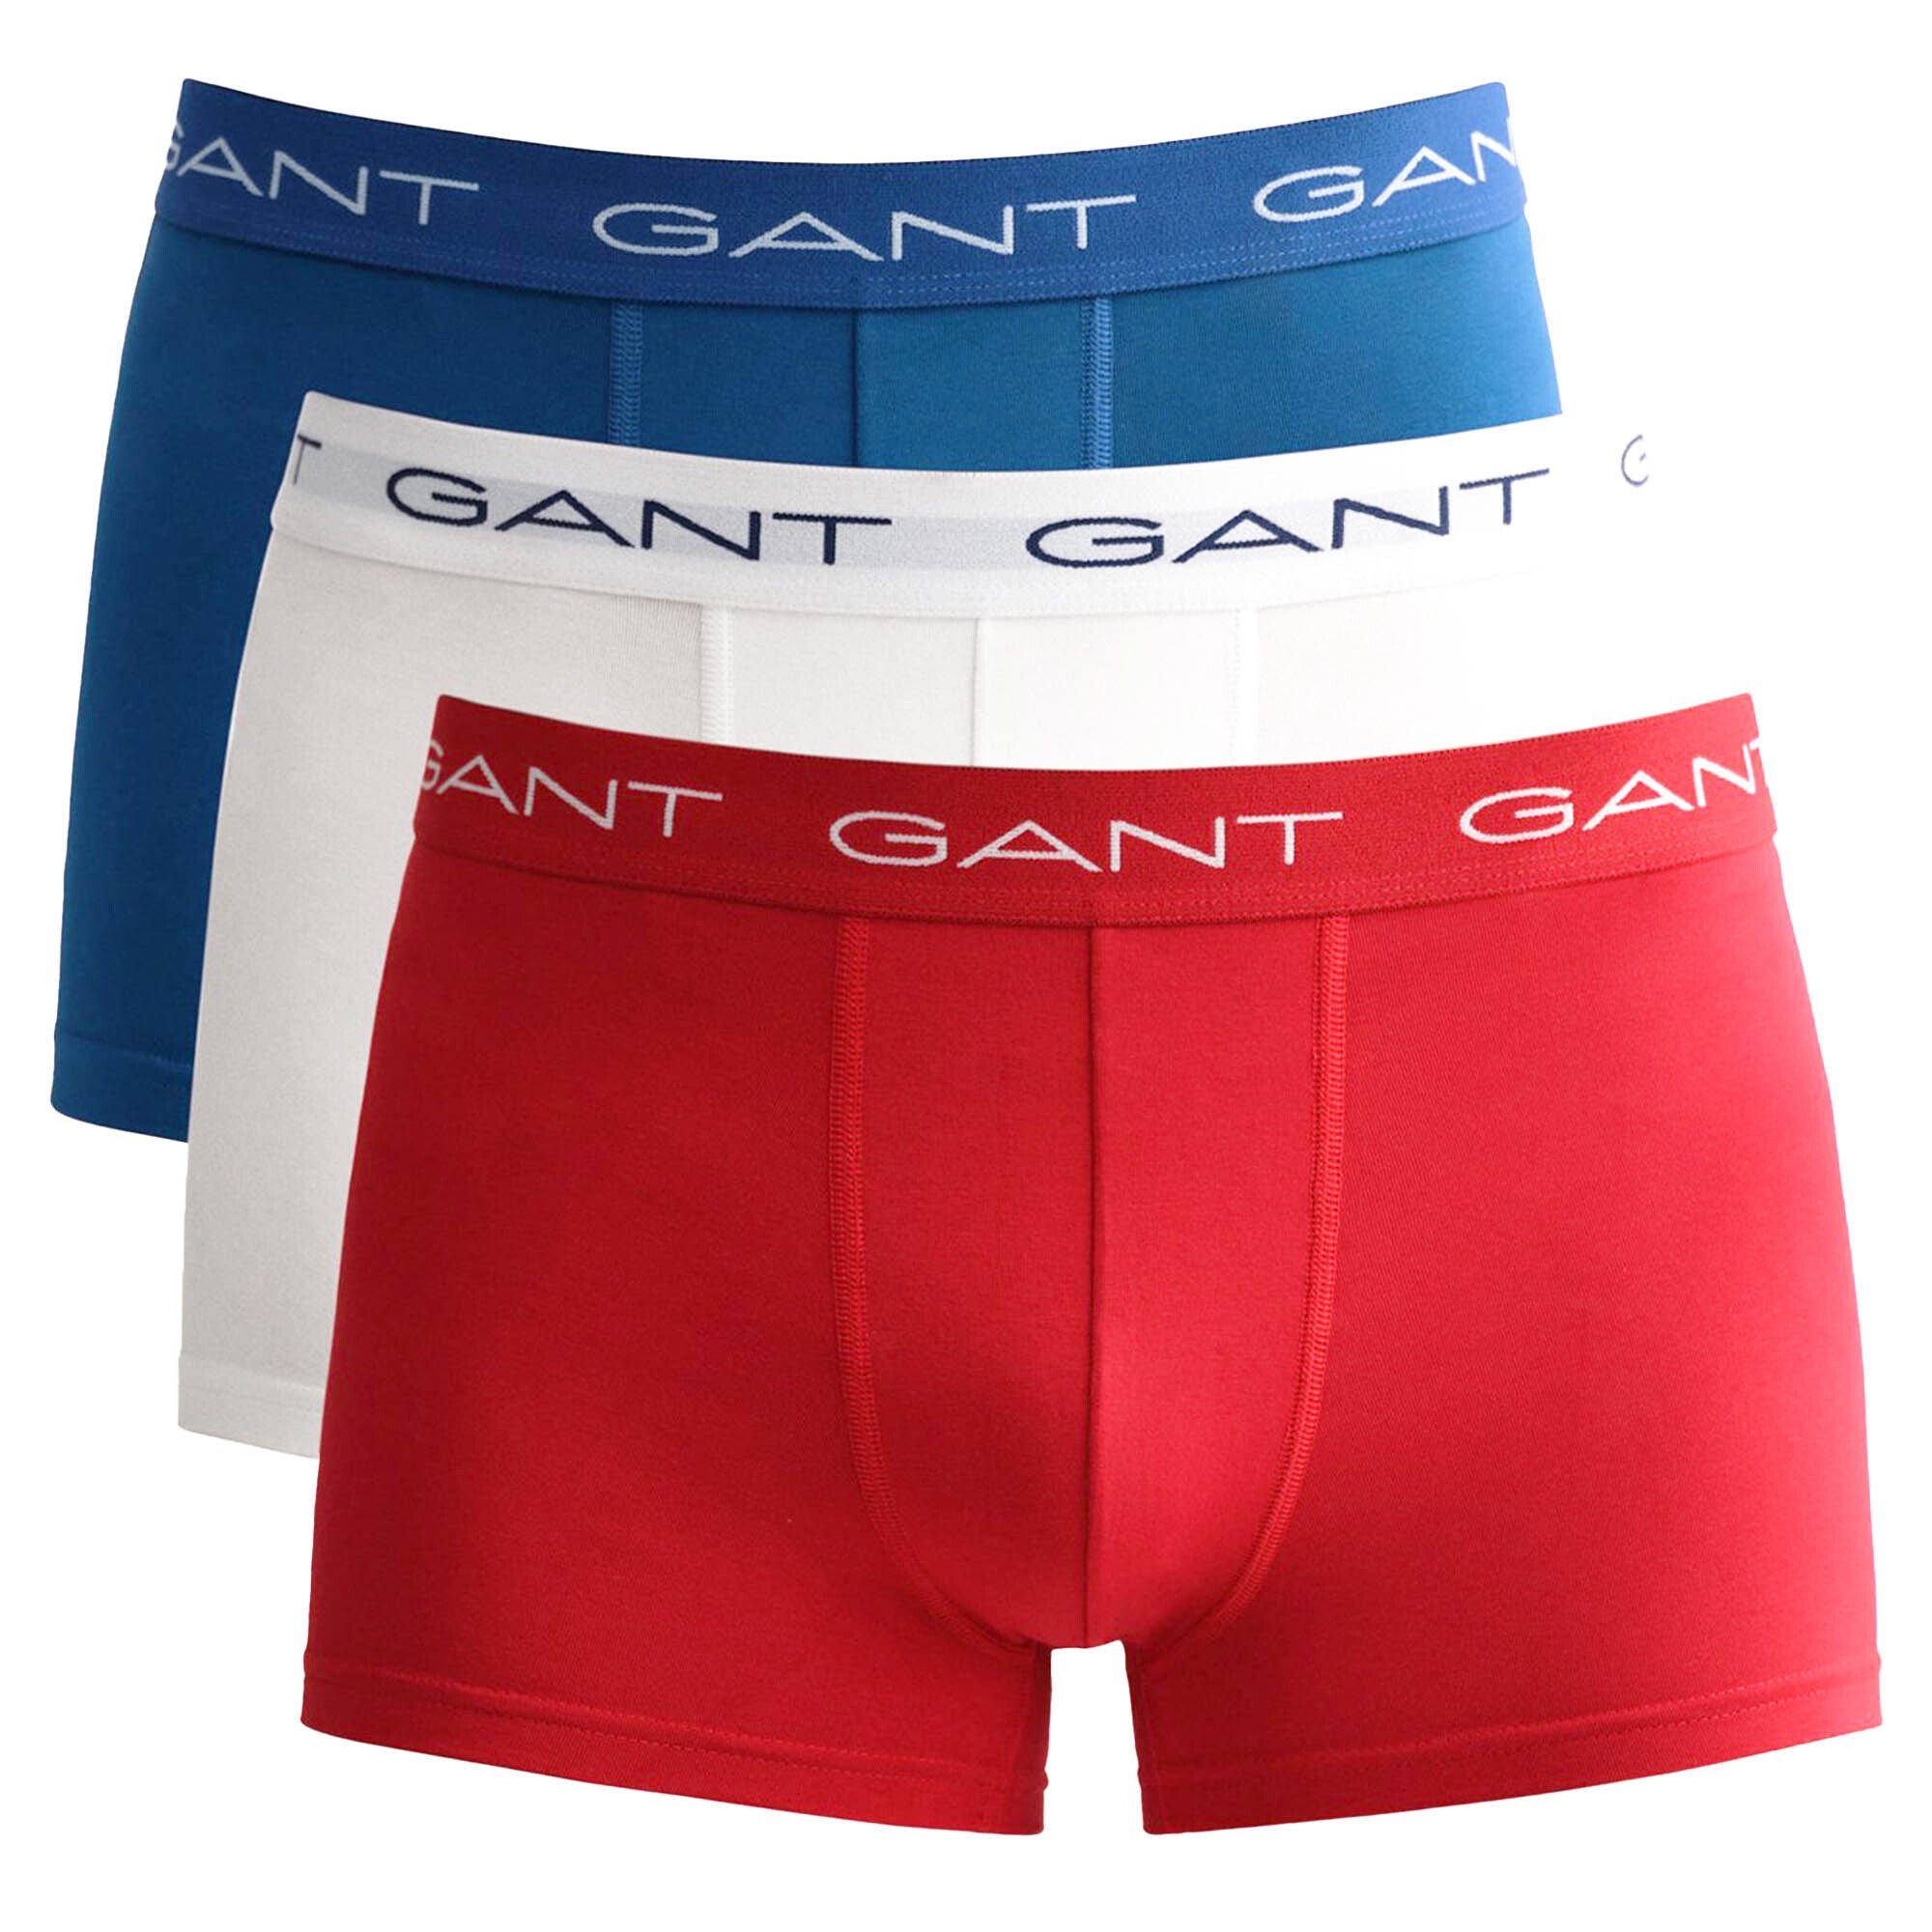 Gant Boxer Herren Boxer Shorts, 3er Pack - Trunks, Cotton Rot